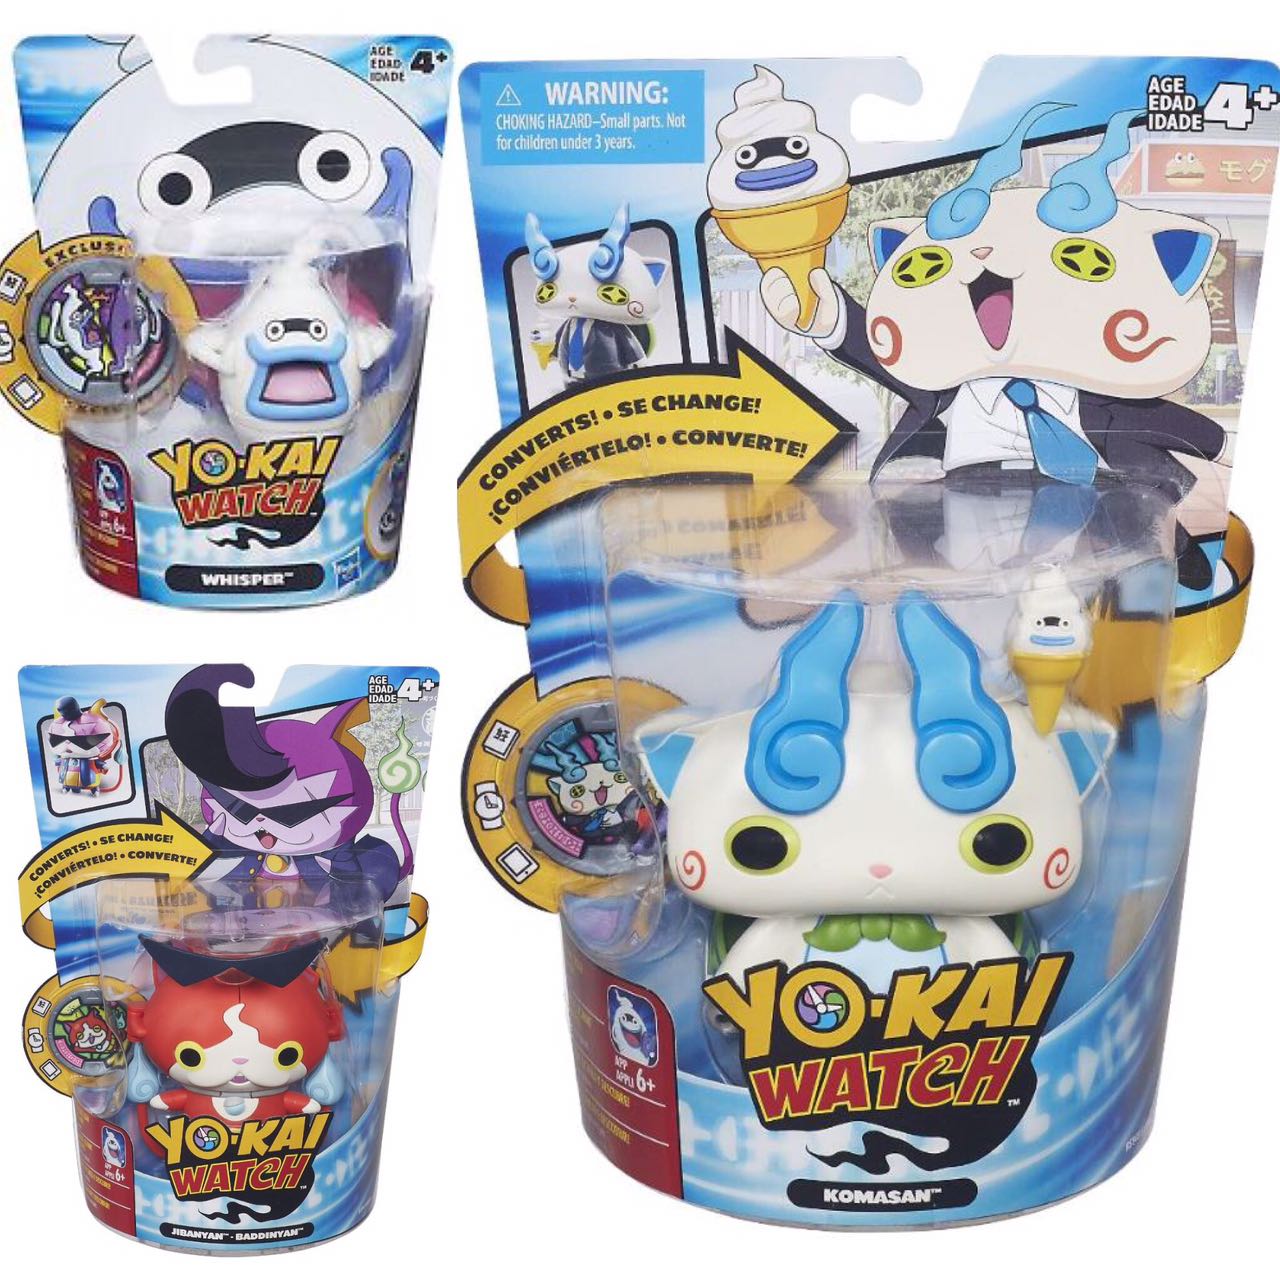 O Mundo Mágico dos Brinquedos: Yo-kai Watch!